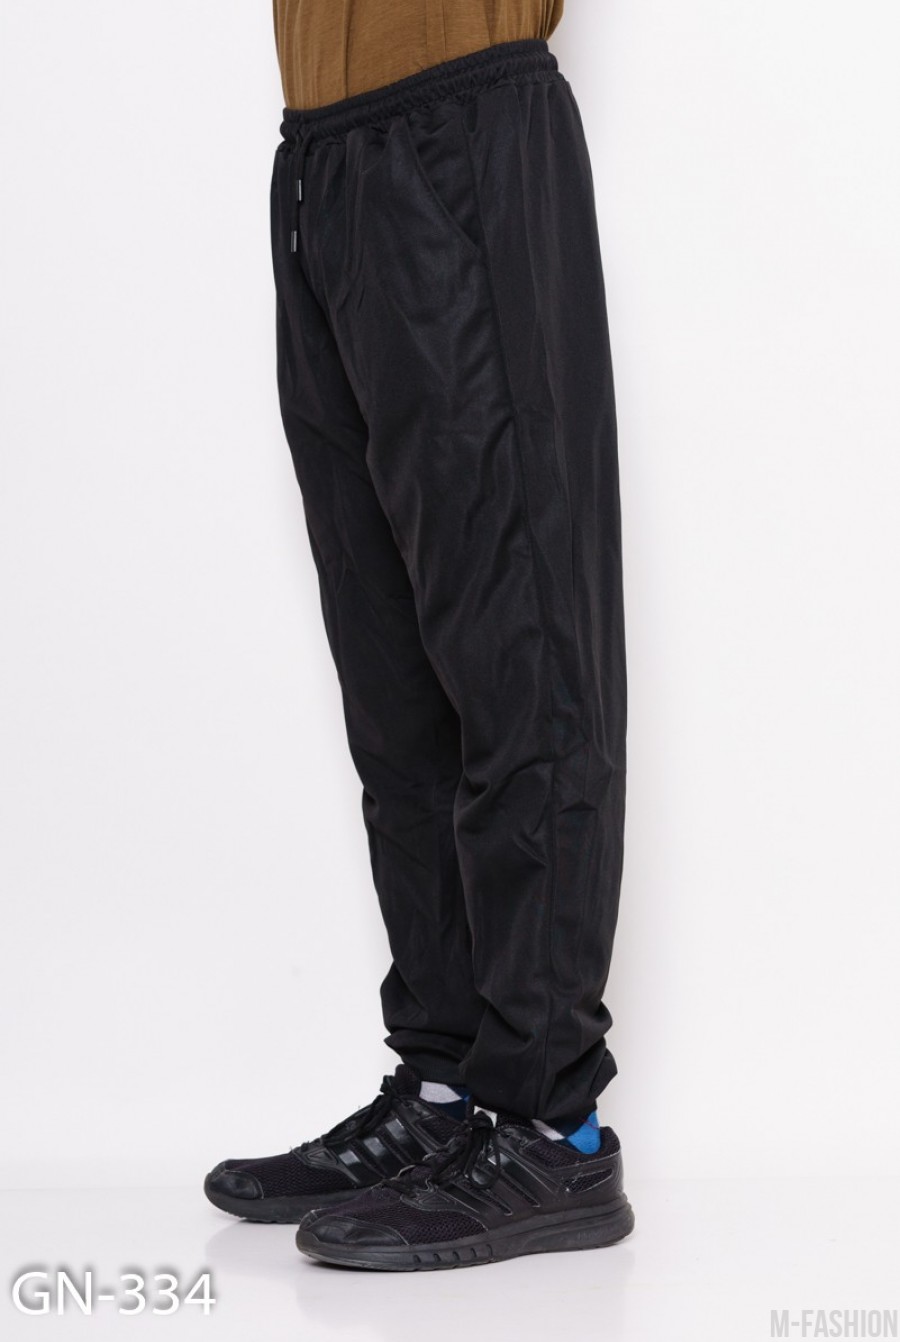 Черные свободные штаны на манжетах с декоративной вставкой на кармане с молнией- Фото 3